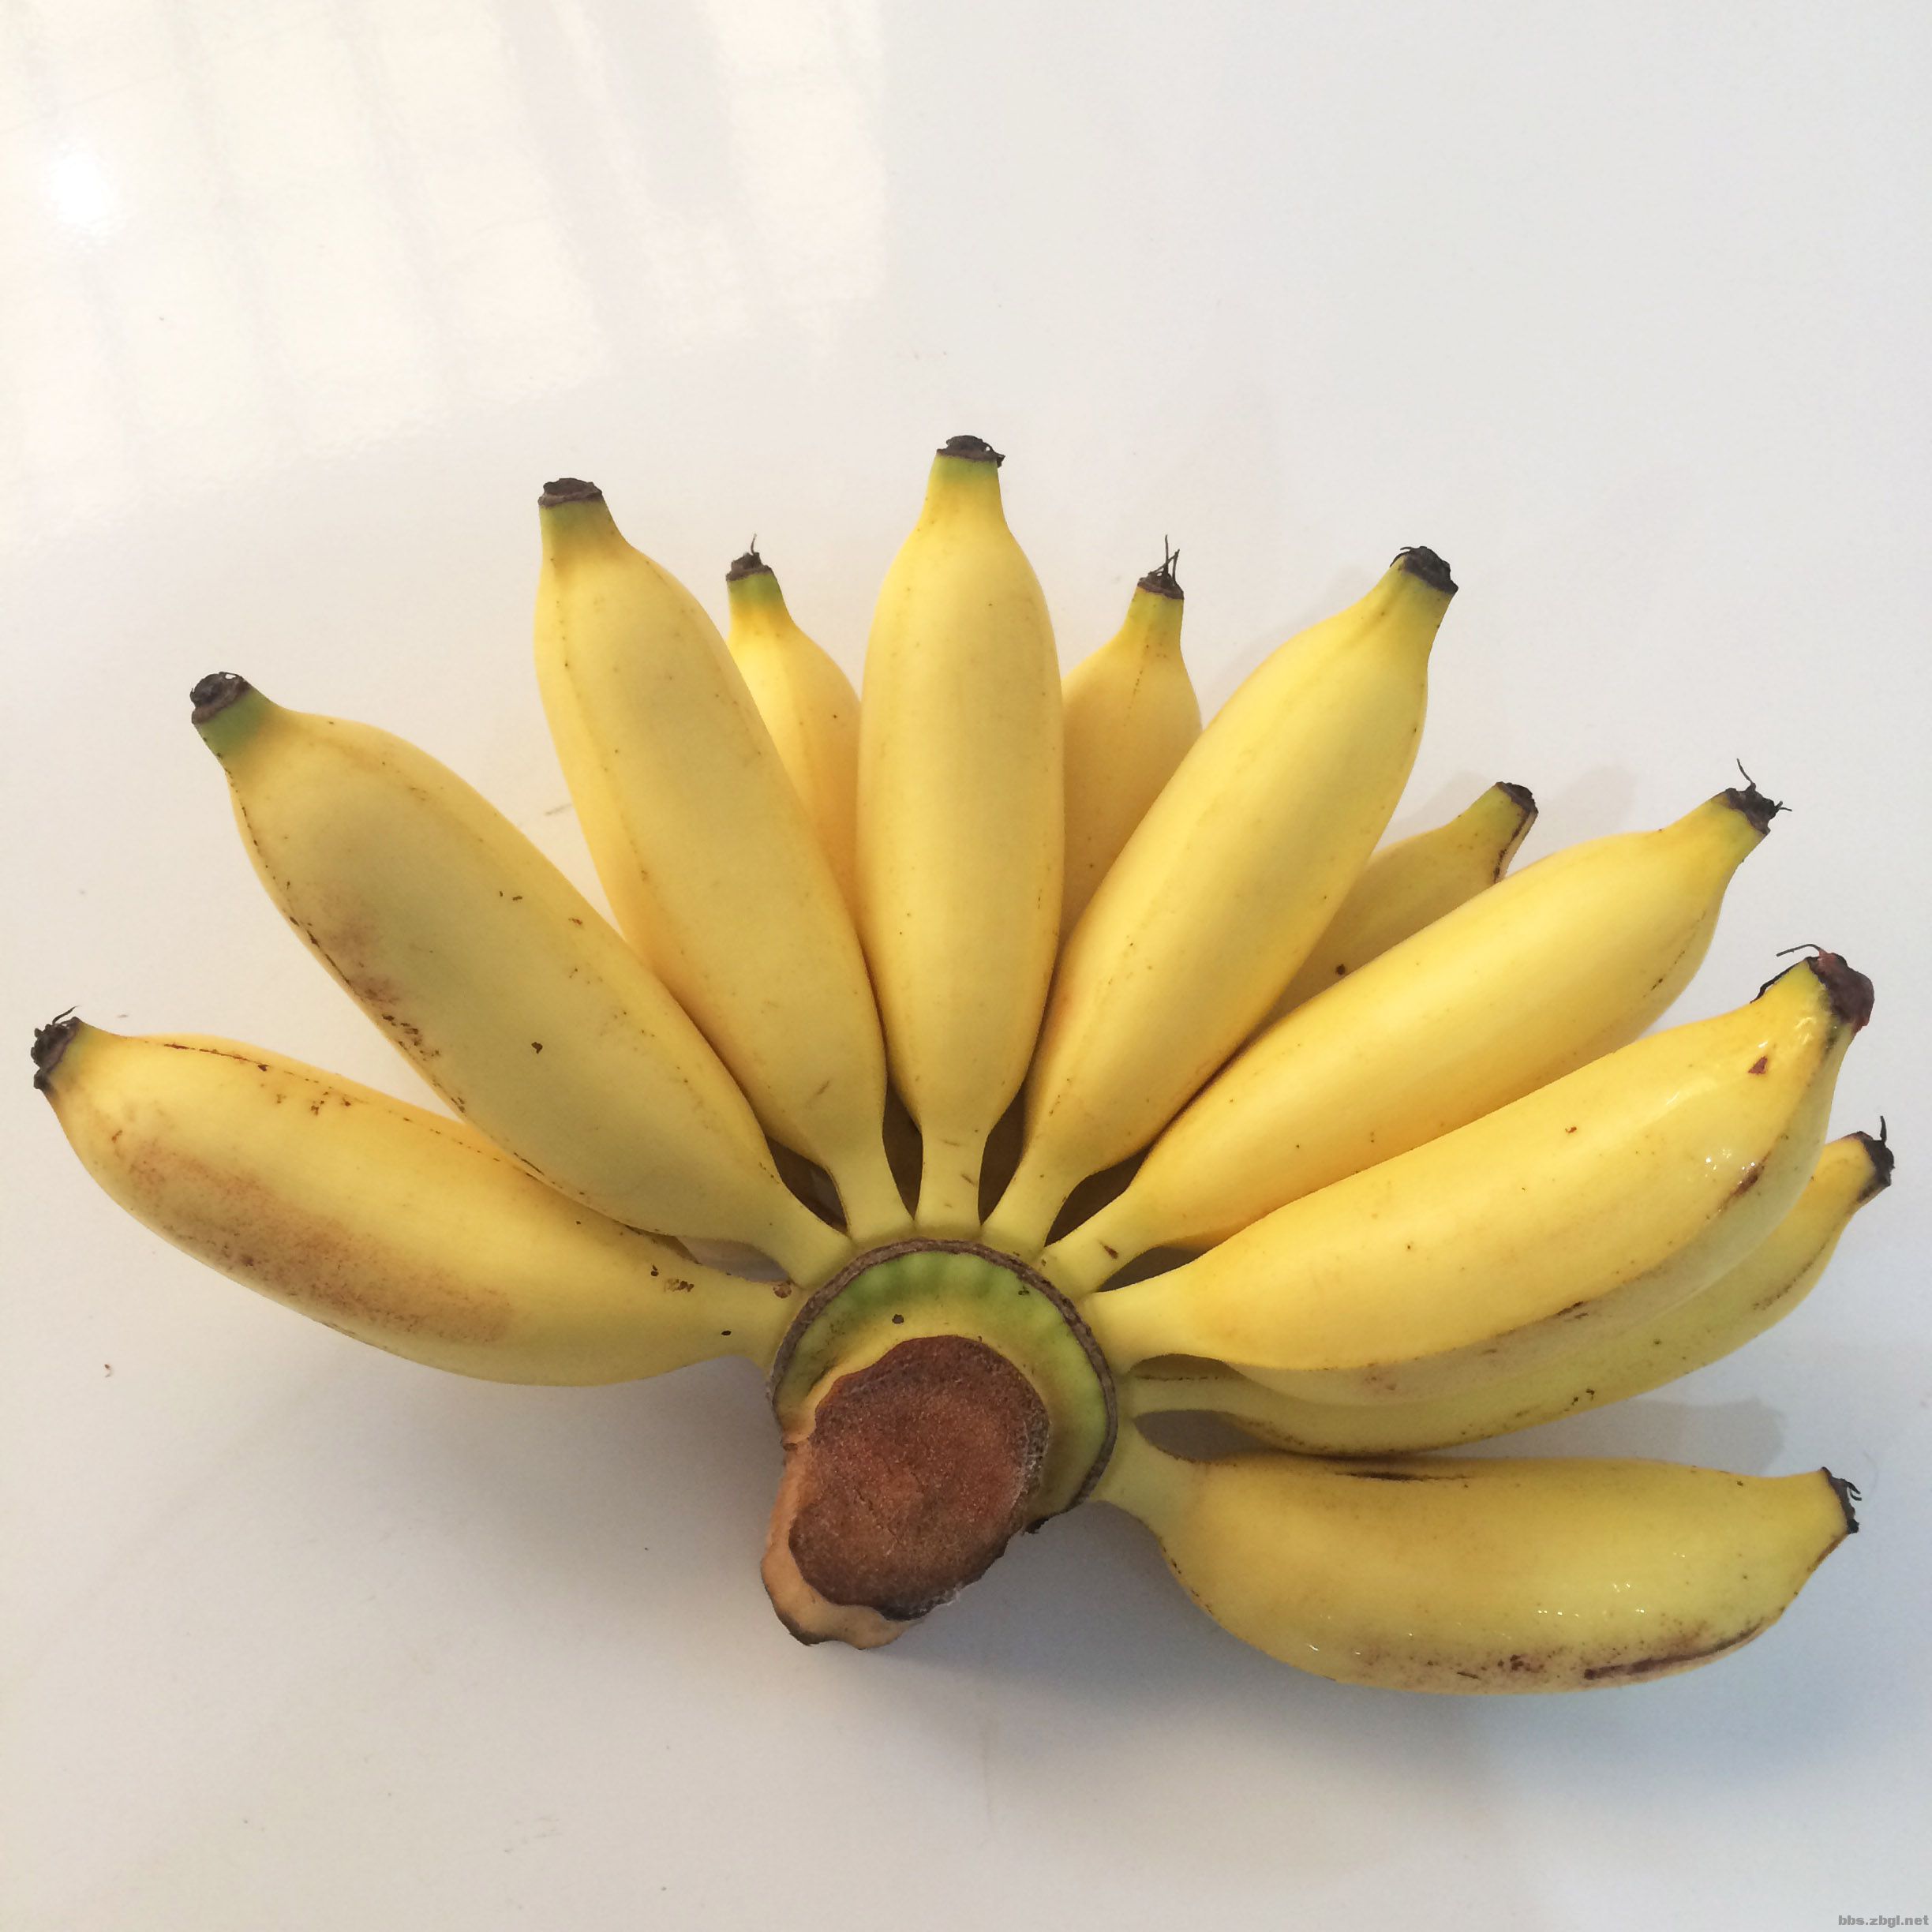 供应香蕉苗电话 供应优质香蕉苗 供应香蕉优质种苗 优质皇帝蕉供应